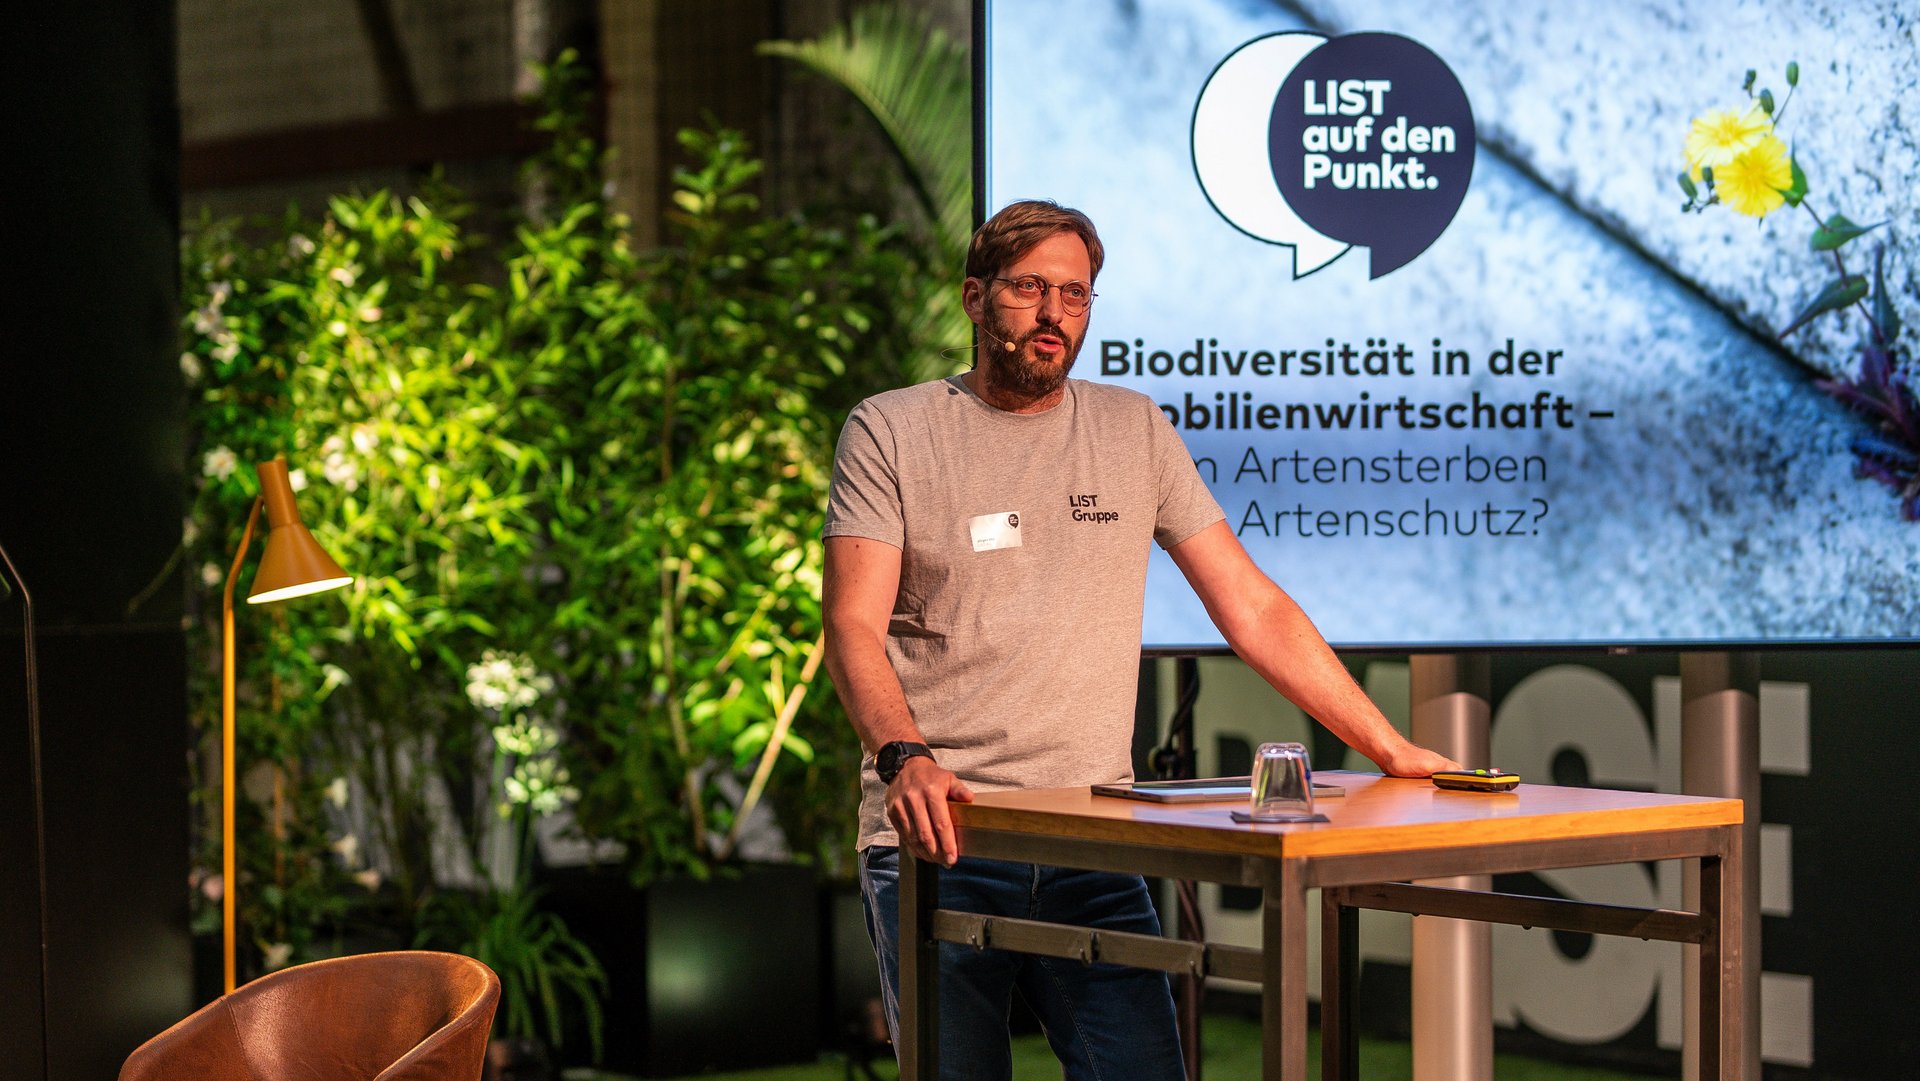 Jürgen Utz eröffnet unser "LIST auf den Punkt."-Event zum Thema Biodiversität in der Immobilienbranche - vom Artensterben zum Artenschutz?"